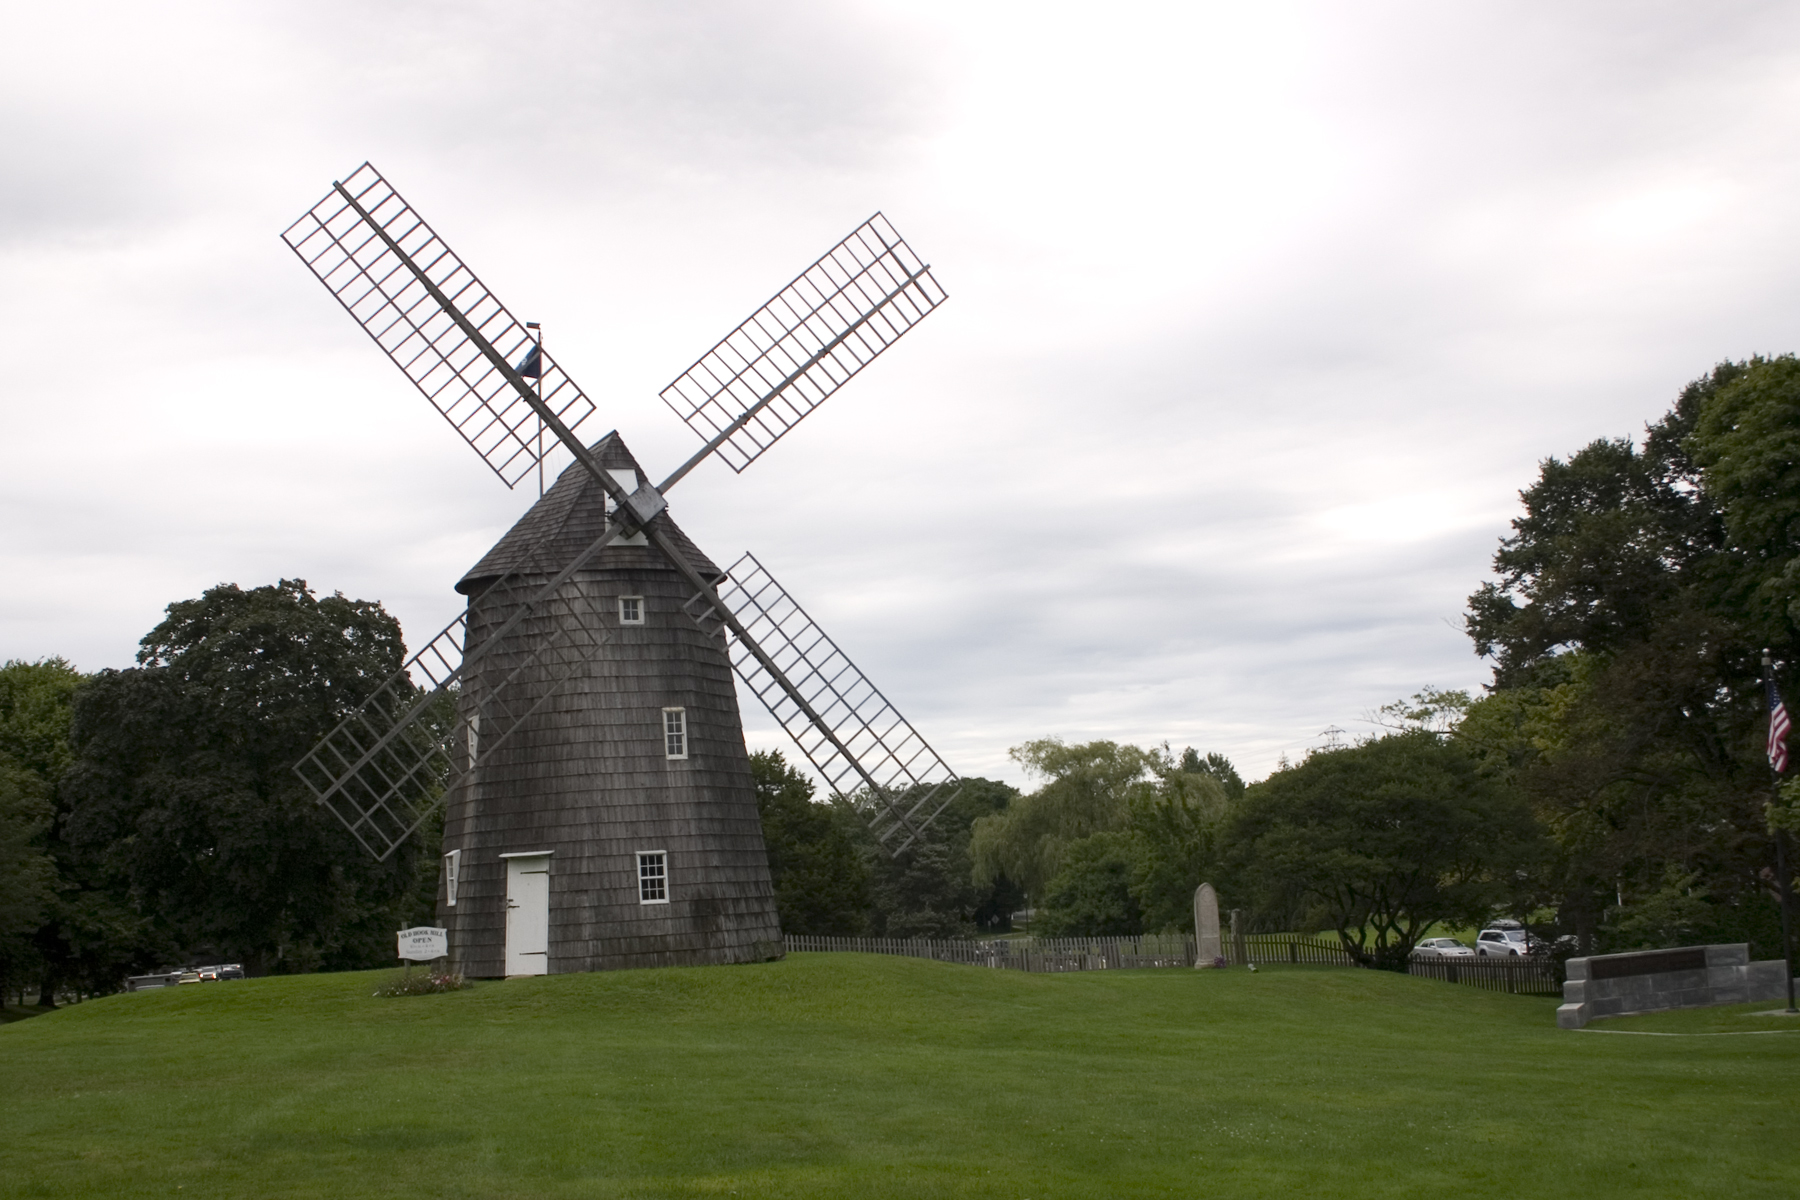 a windmill on a grassy field